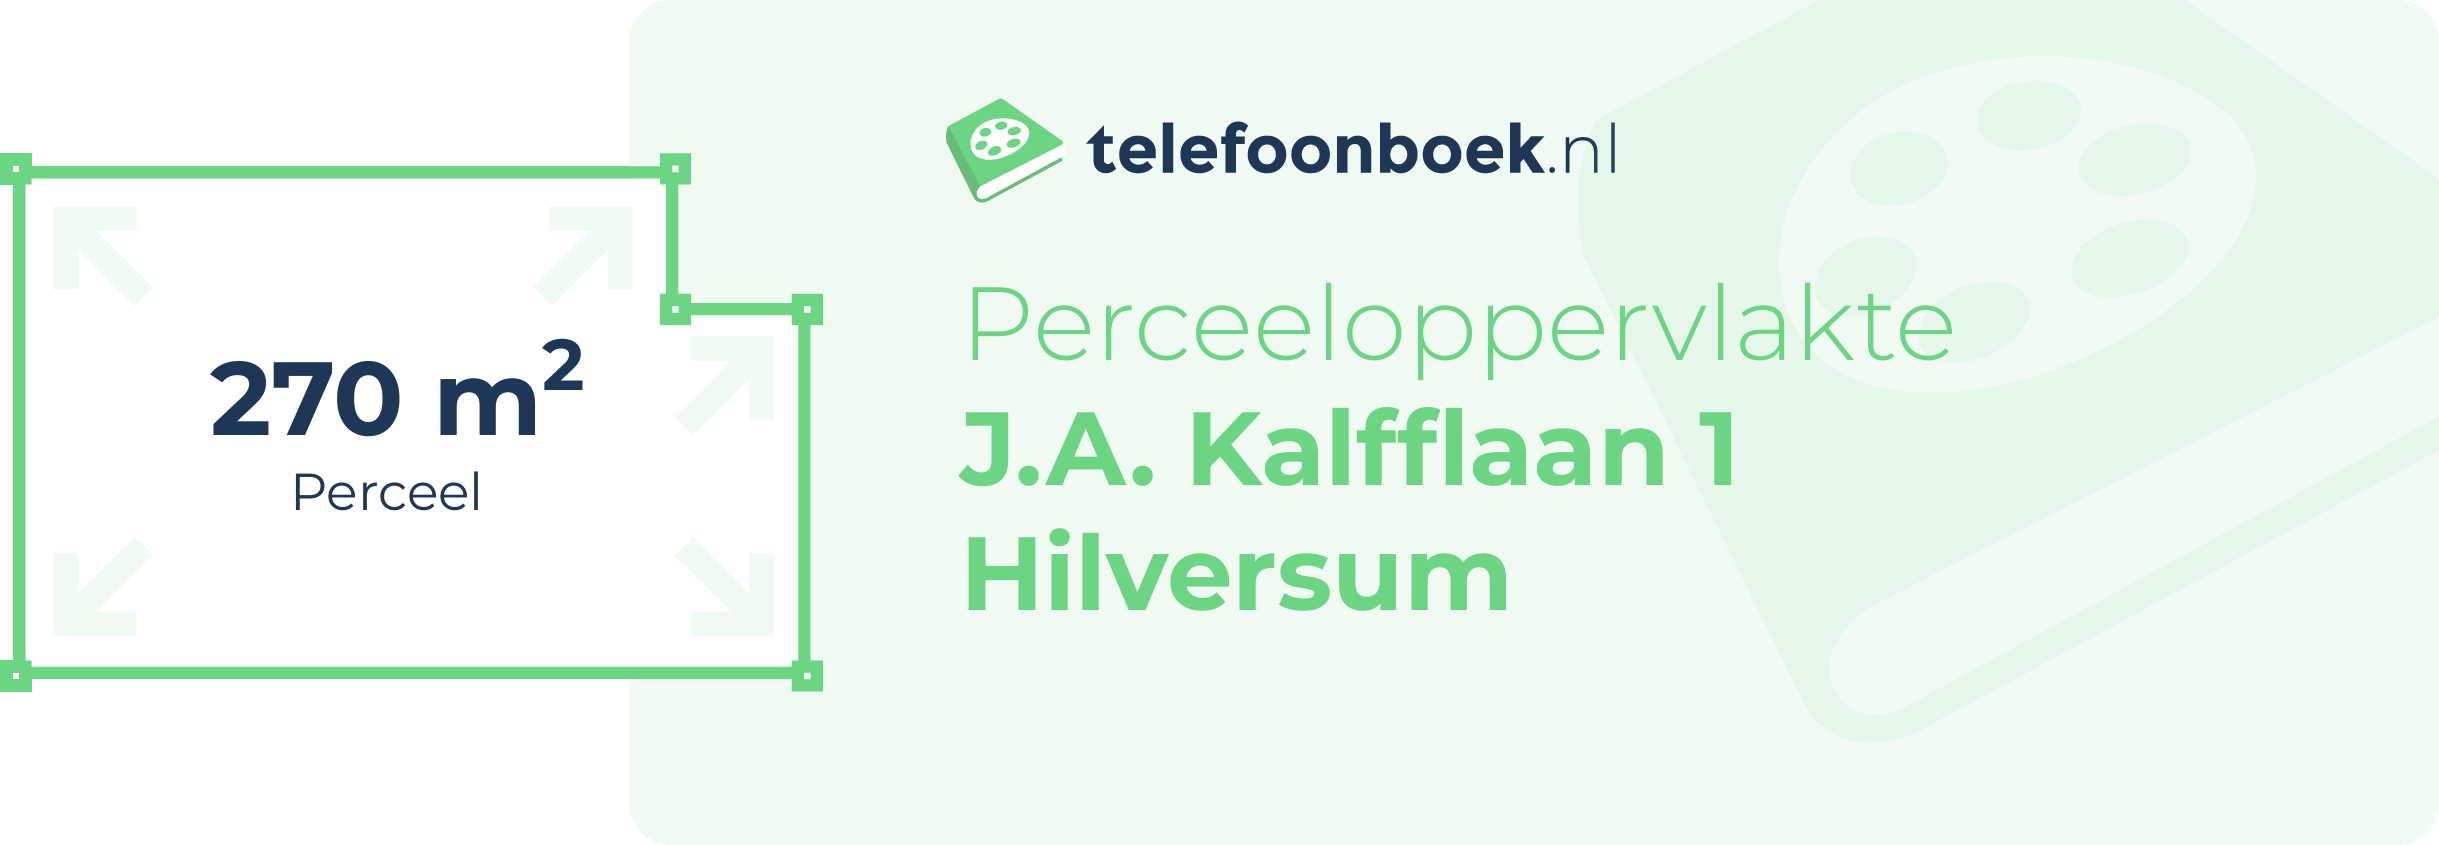 Perceeloppervlakte J.A. Kalfflaan 1 Hilversum